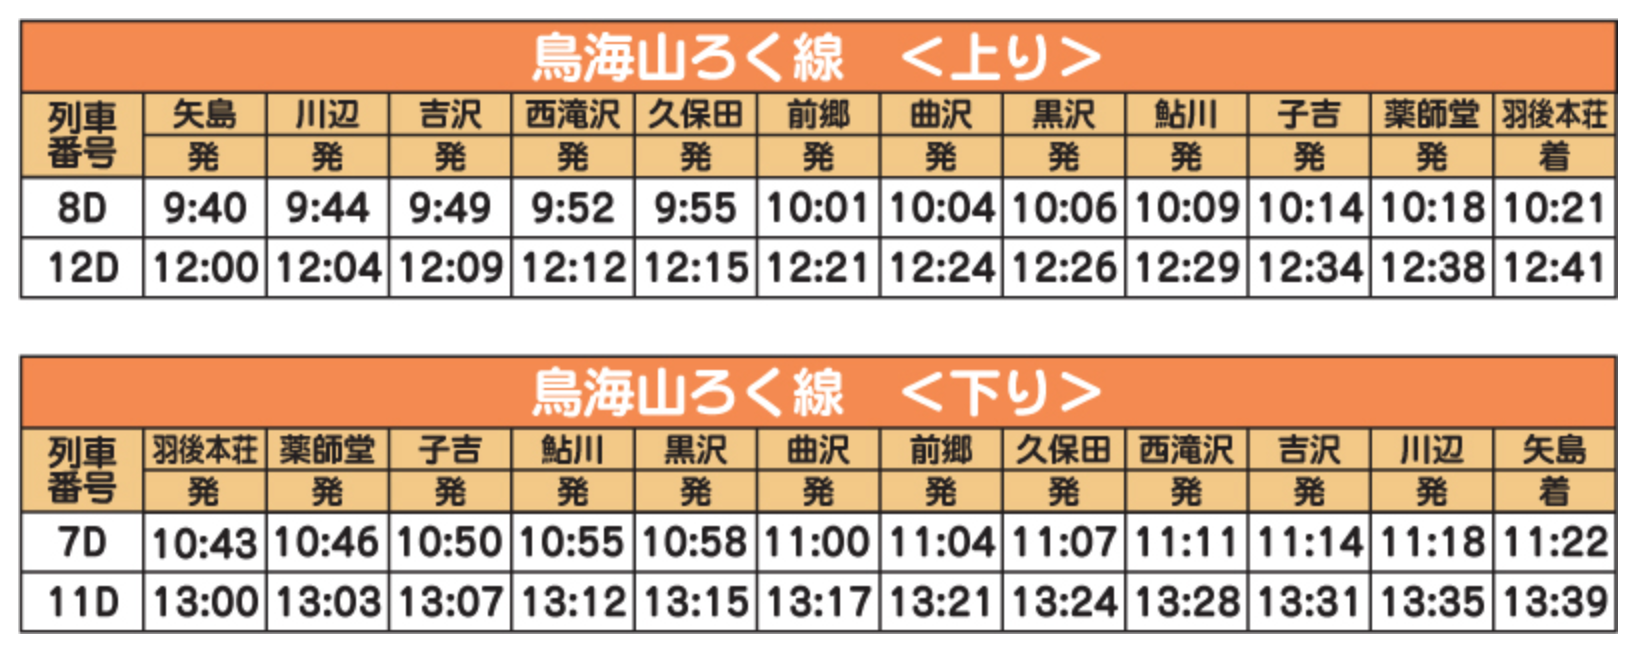 由利高原鐵道矢島站玩具列車時刻表